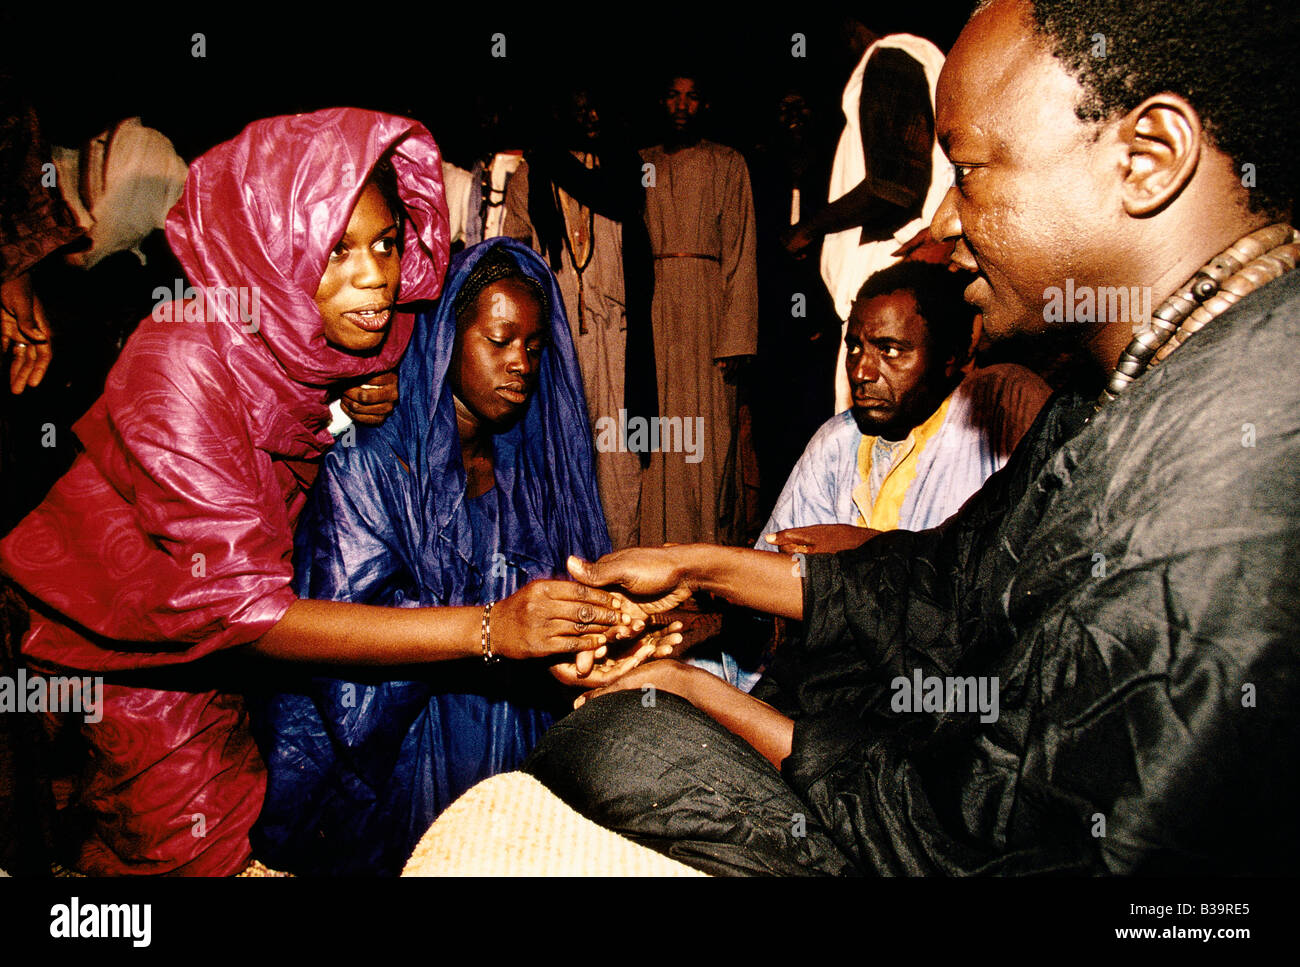 "TOUBA DELL'AFRICA DI POCO LA MECCA', devoti rendere omaggio alla Sheikh DIGUEL caduta, 1996 Foto Stock